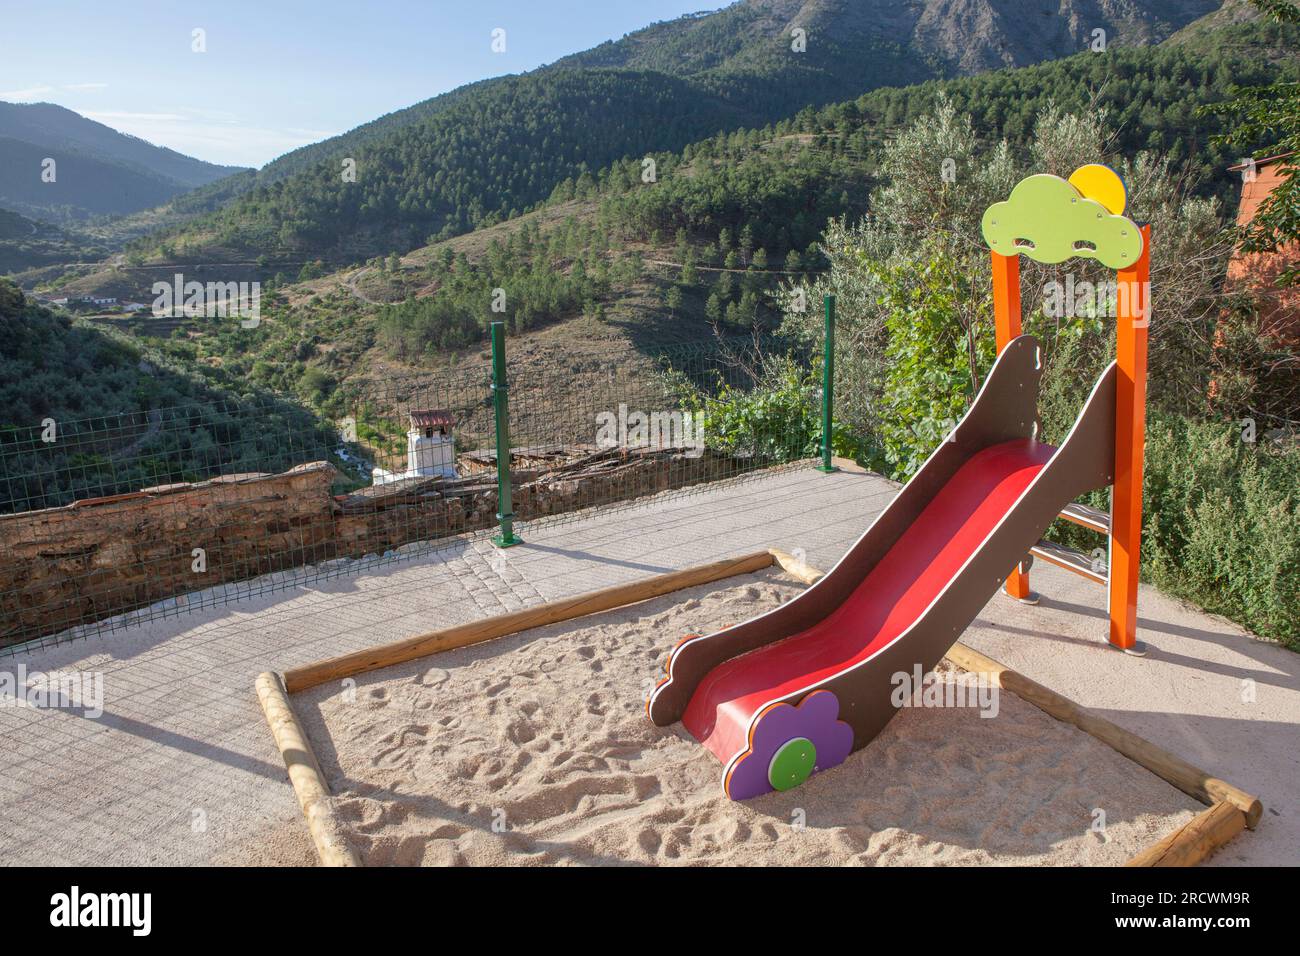 Piccolo parco giochi di montagna rurale, regione di Las Hurdes, Caceres, Estremadura, Spagna Foto Stock